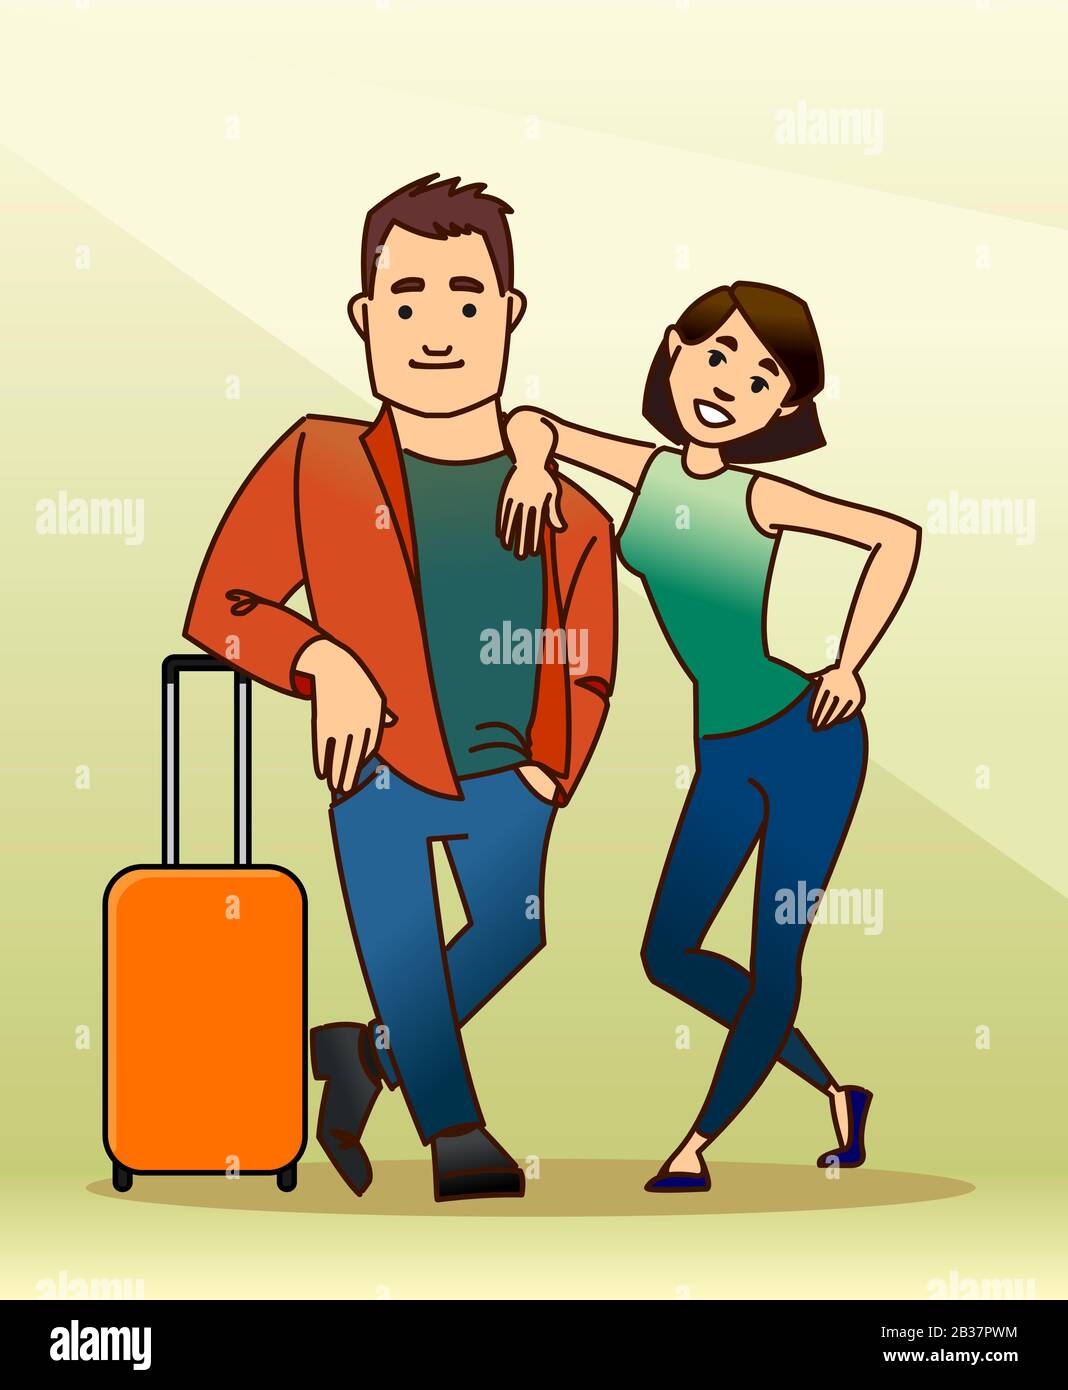 Der Kerl und das Mädchen gehen in den Urlaub. Ein Mann steht auf einem Koffer, eine Frau steht mit der Hand auf der Schulter des Mannes. Familie. Modernes flaches Vecto Stock Vektor